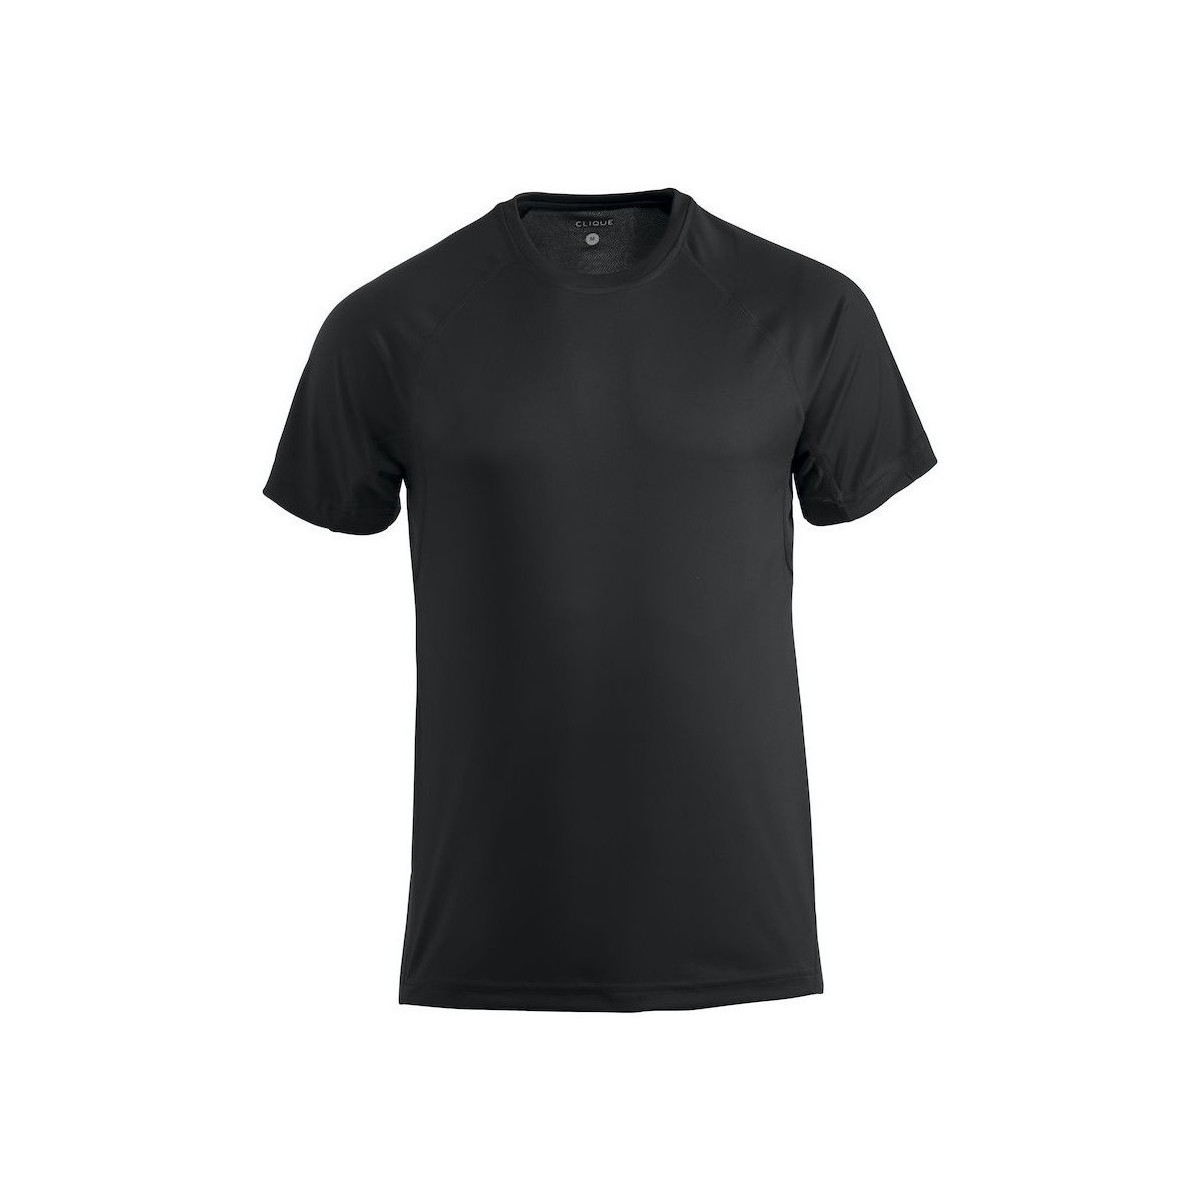 Vêtements Homme T-shirts manches longues C-Clique Premium Noir